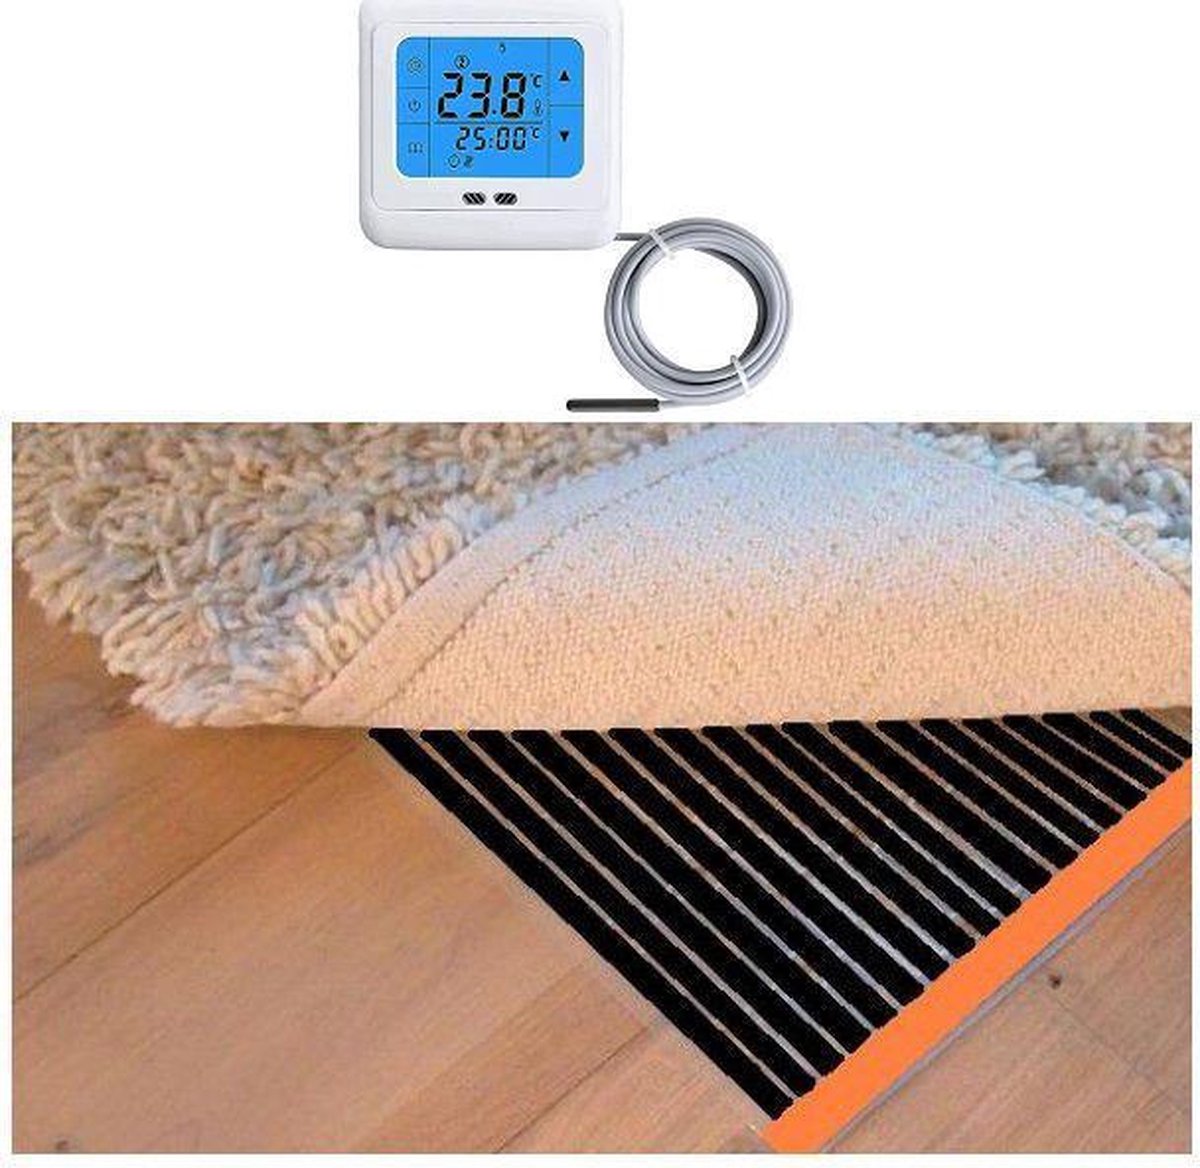 Woonkamer verwarmingsfolie infrarood folie voor vloerbedekking, tapijten vloerkleden elektrisch met TH 89 thermostaat 100 cm x 950 cm 1520 Watt